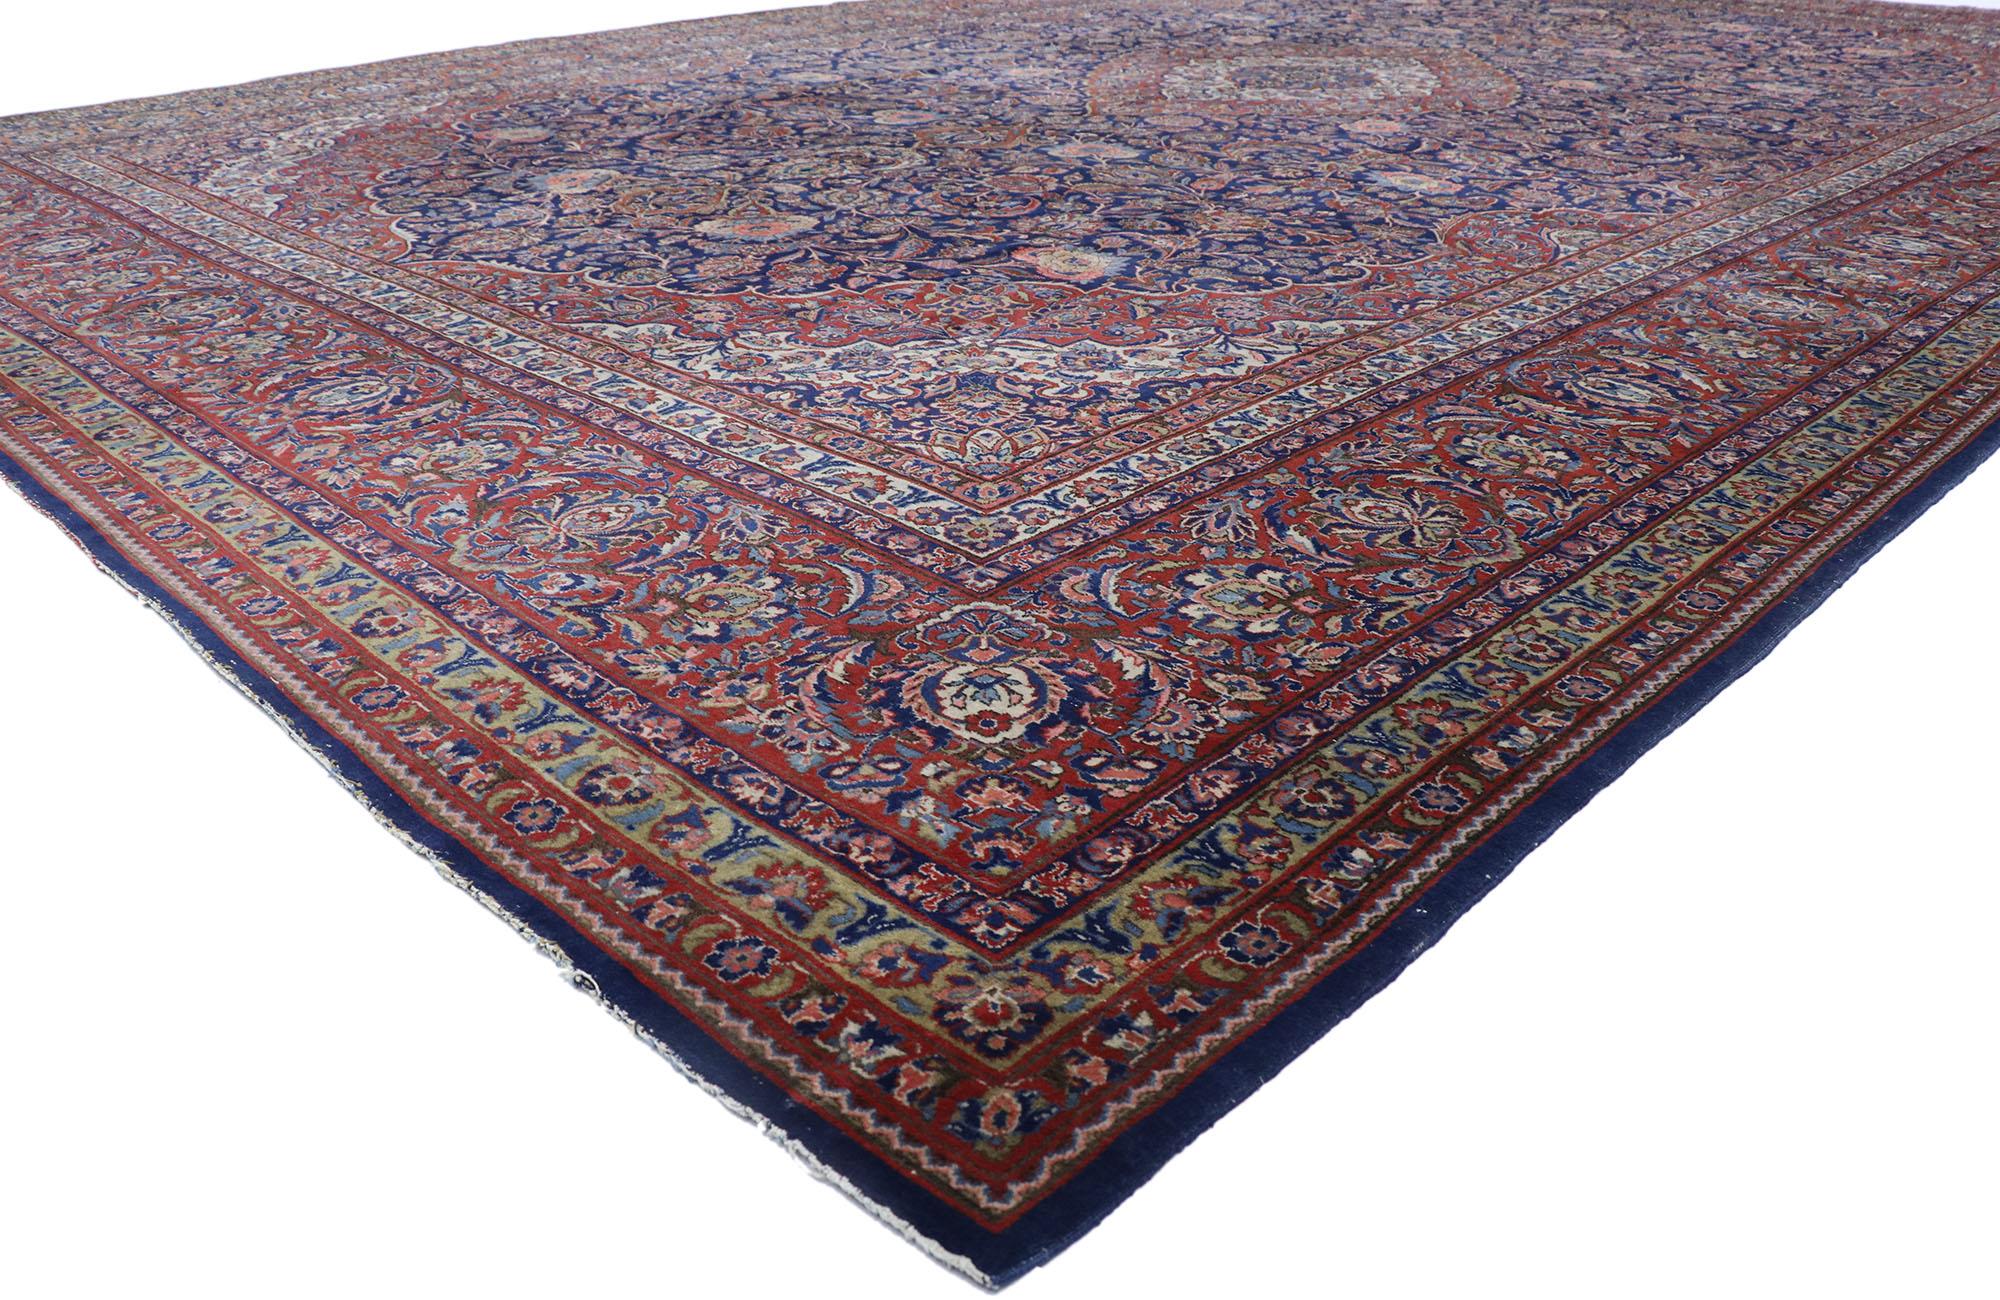 77866 antiker persischer Qazvin-Teppich mit viktorianischem Stil 12'02 x 19'00. Dieser antike persische Mashhad-Teppich aus handgeknüpfter Wolle besticht durch ein aufwendiges konzentrisches Palmettenmedaillon, das an beiden Enden mit